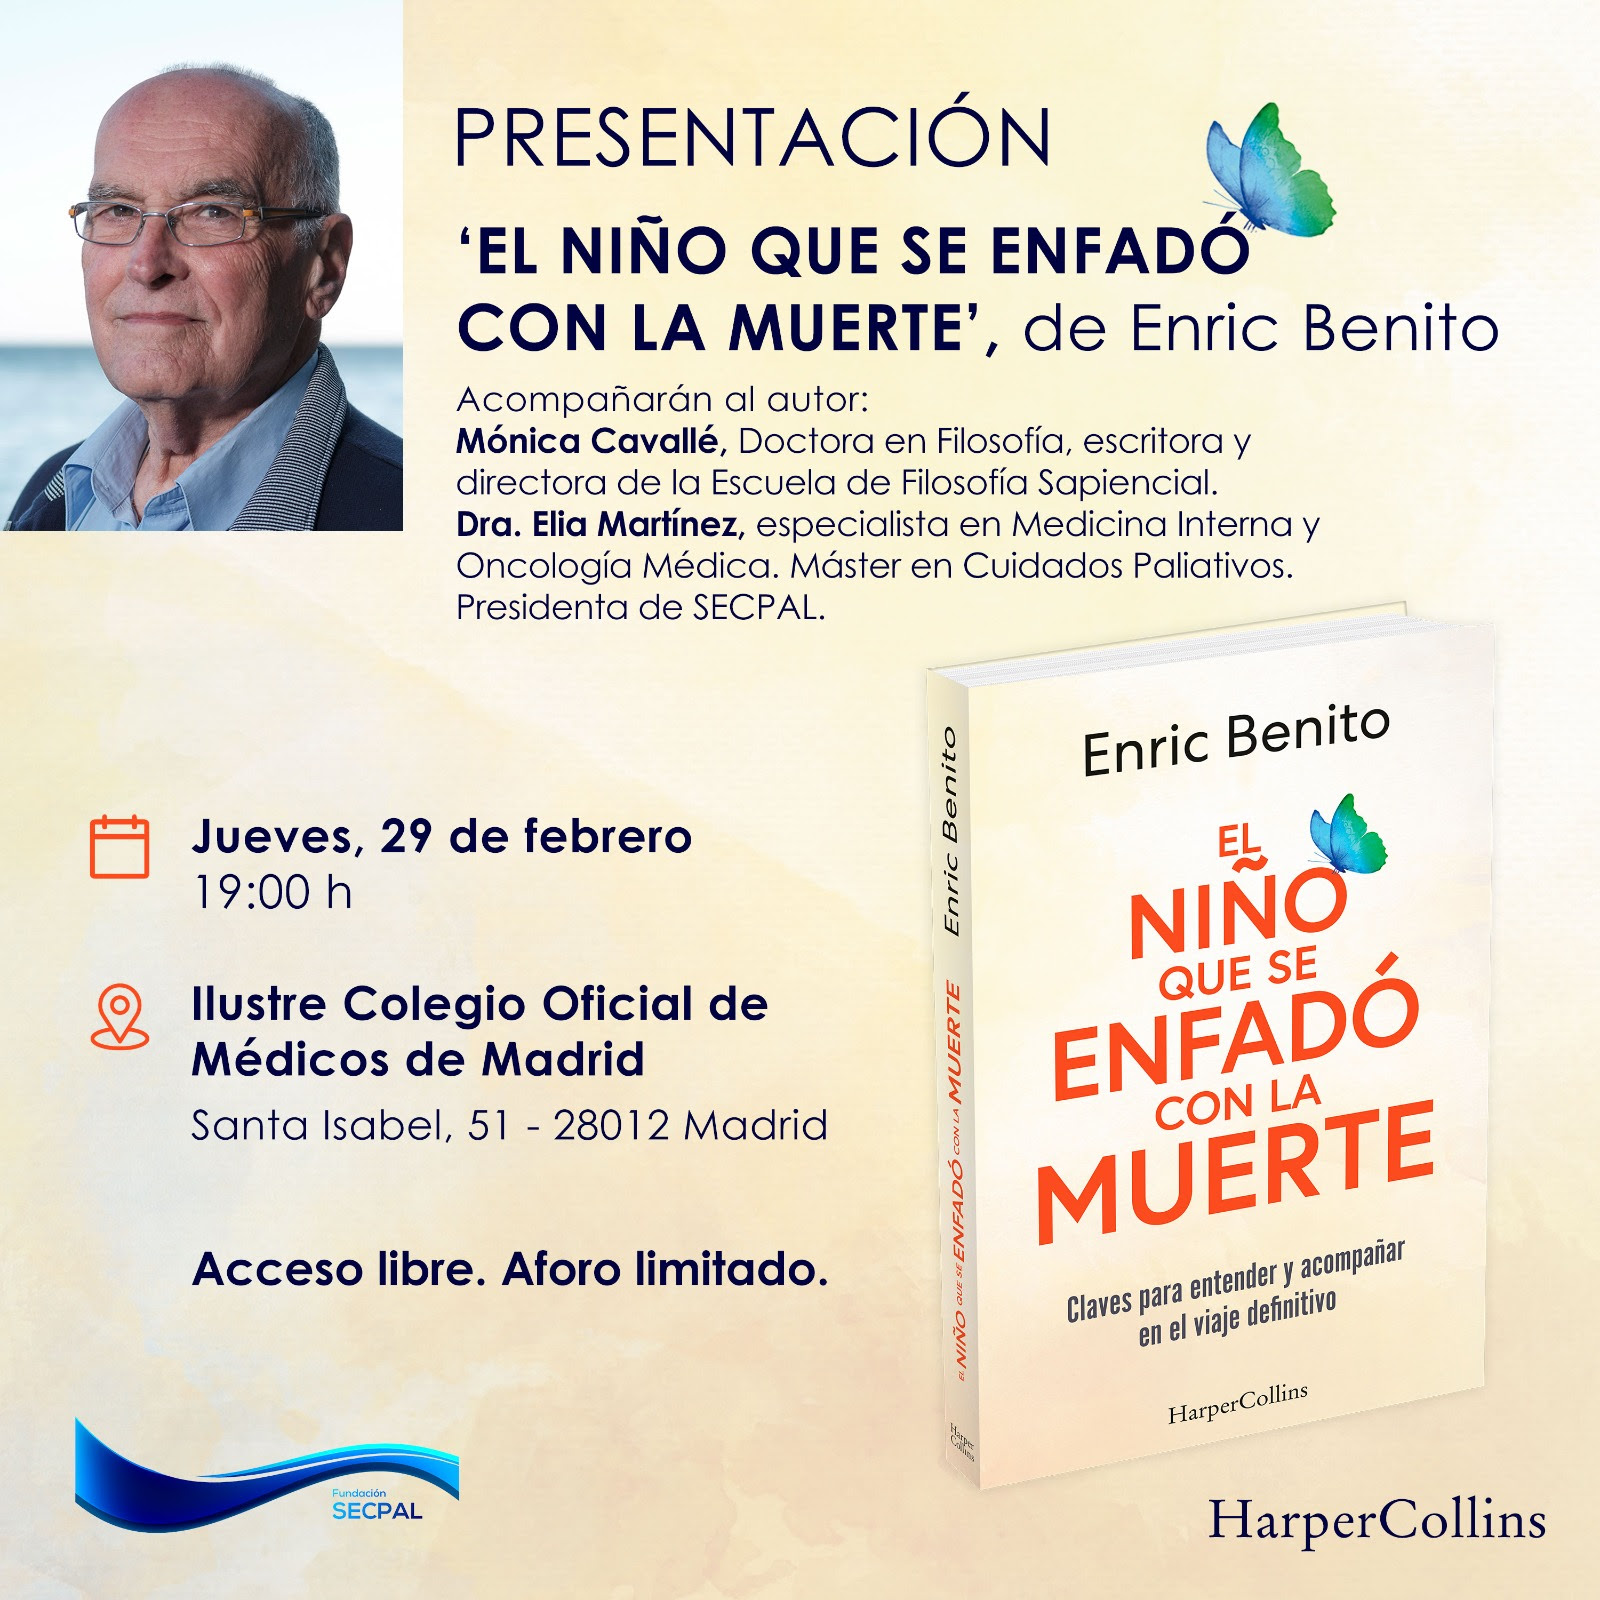 Jueves, 29 de febrero | Presentación en Madrid del libro ‘El niño que se enfadó con la muerte’, de Enric Benito